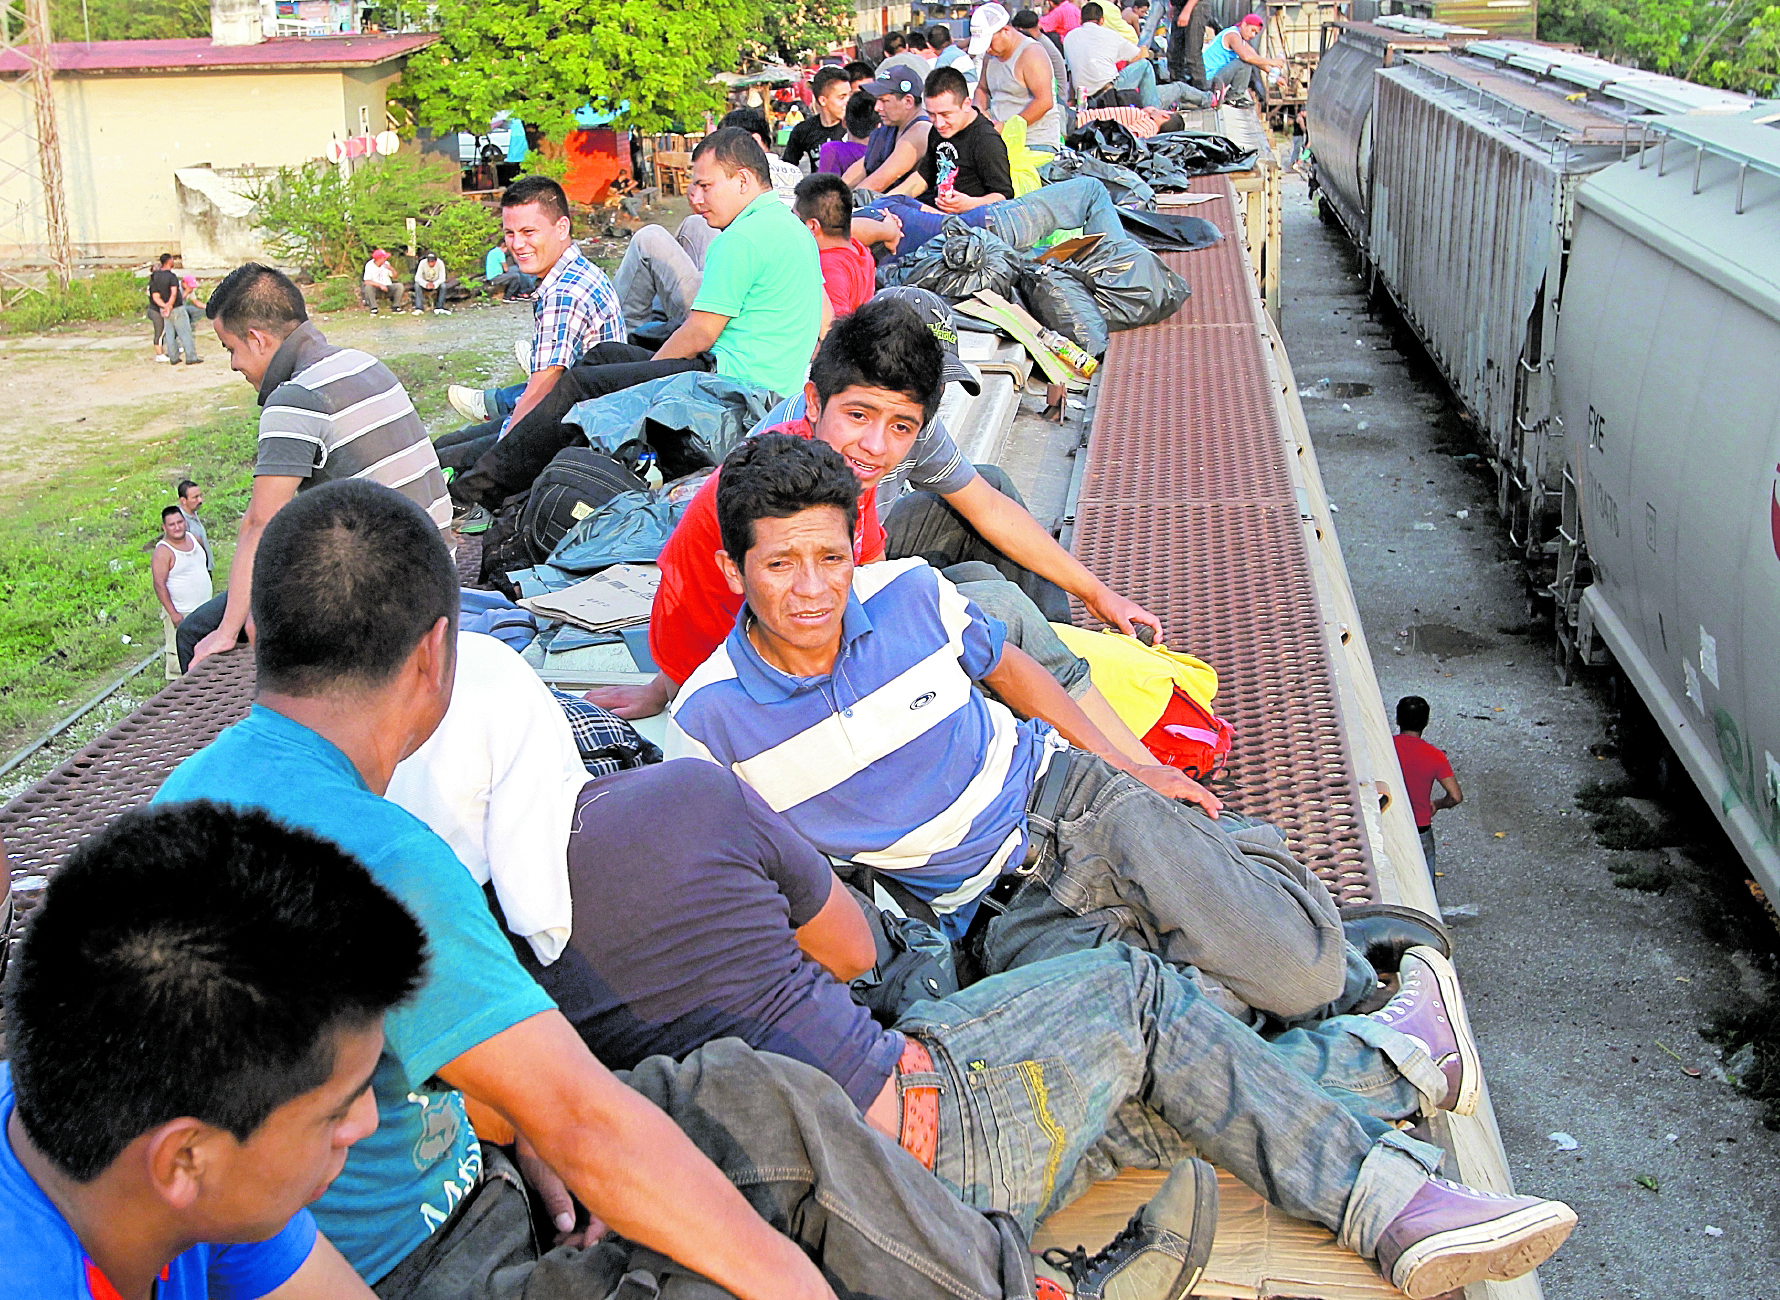 El tren de carga llamado la Bestia lleva sobre su techo a decenas de migrantes, pero muchos caen y mueren o resultan gravemente heridos. (Foto Prensa Libre: Sergio Morales)